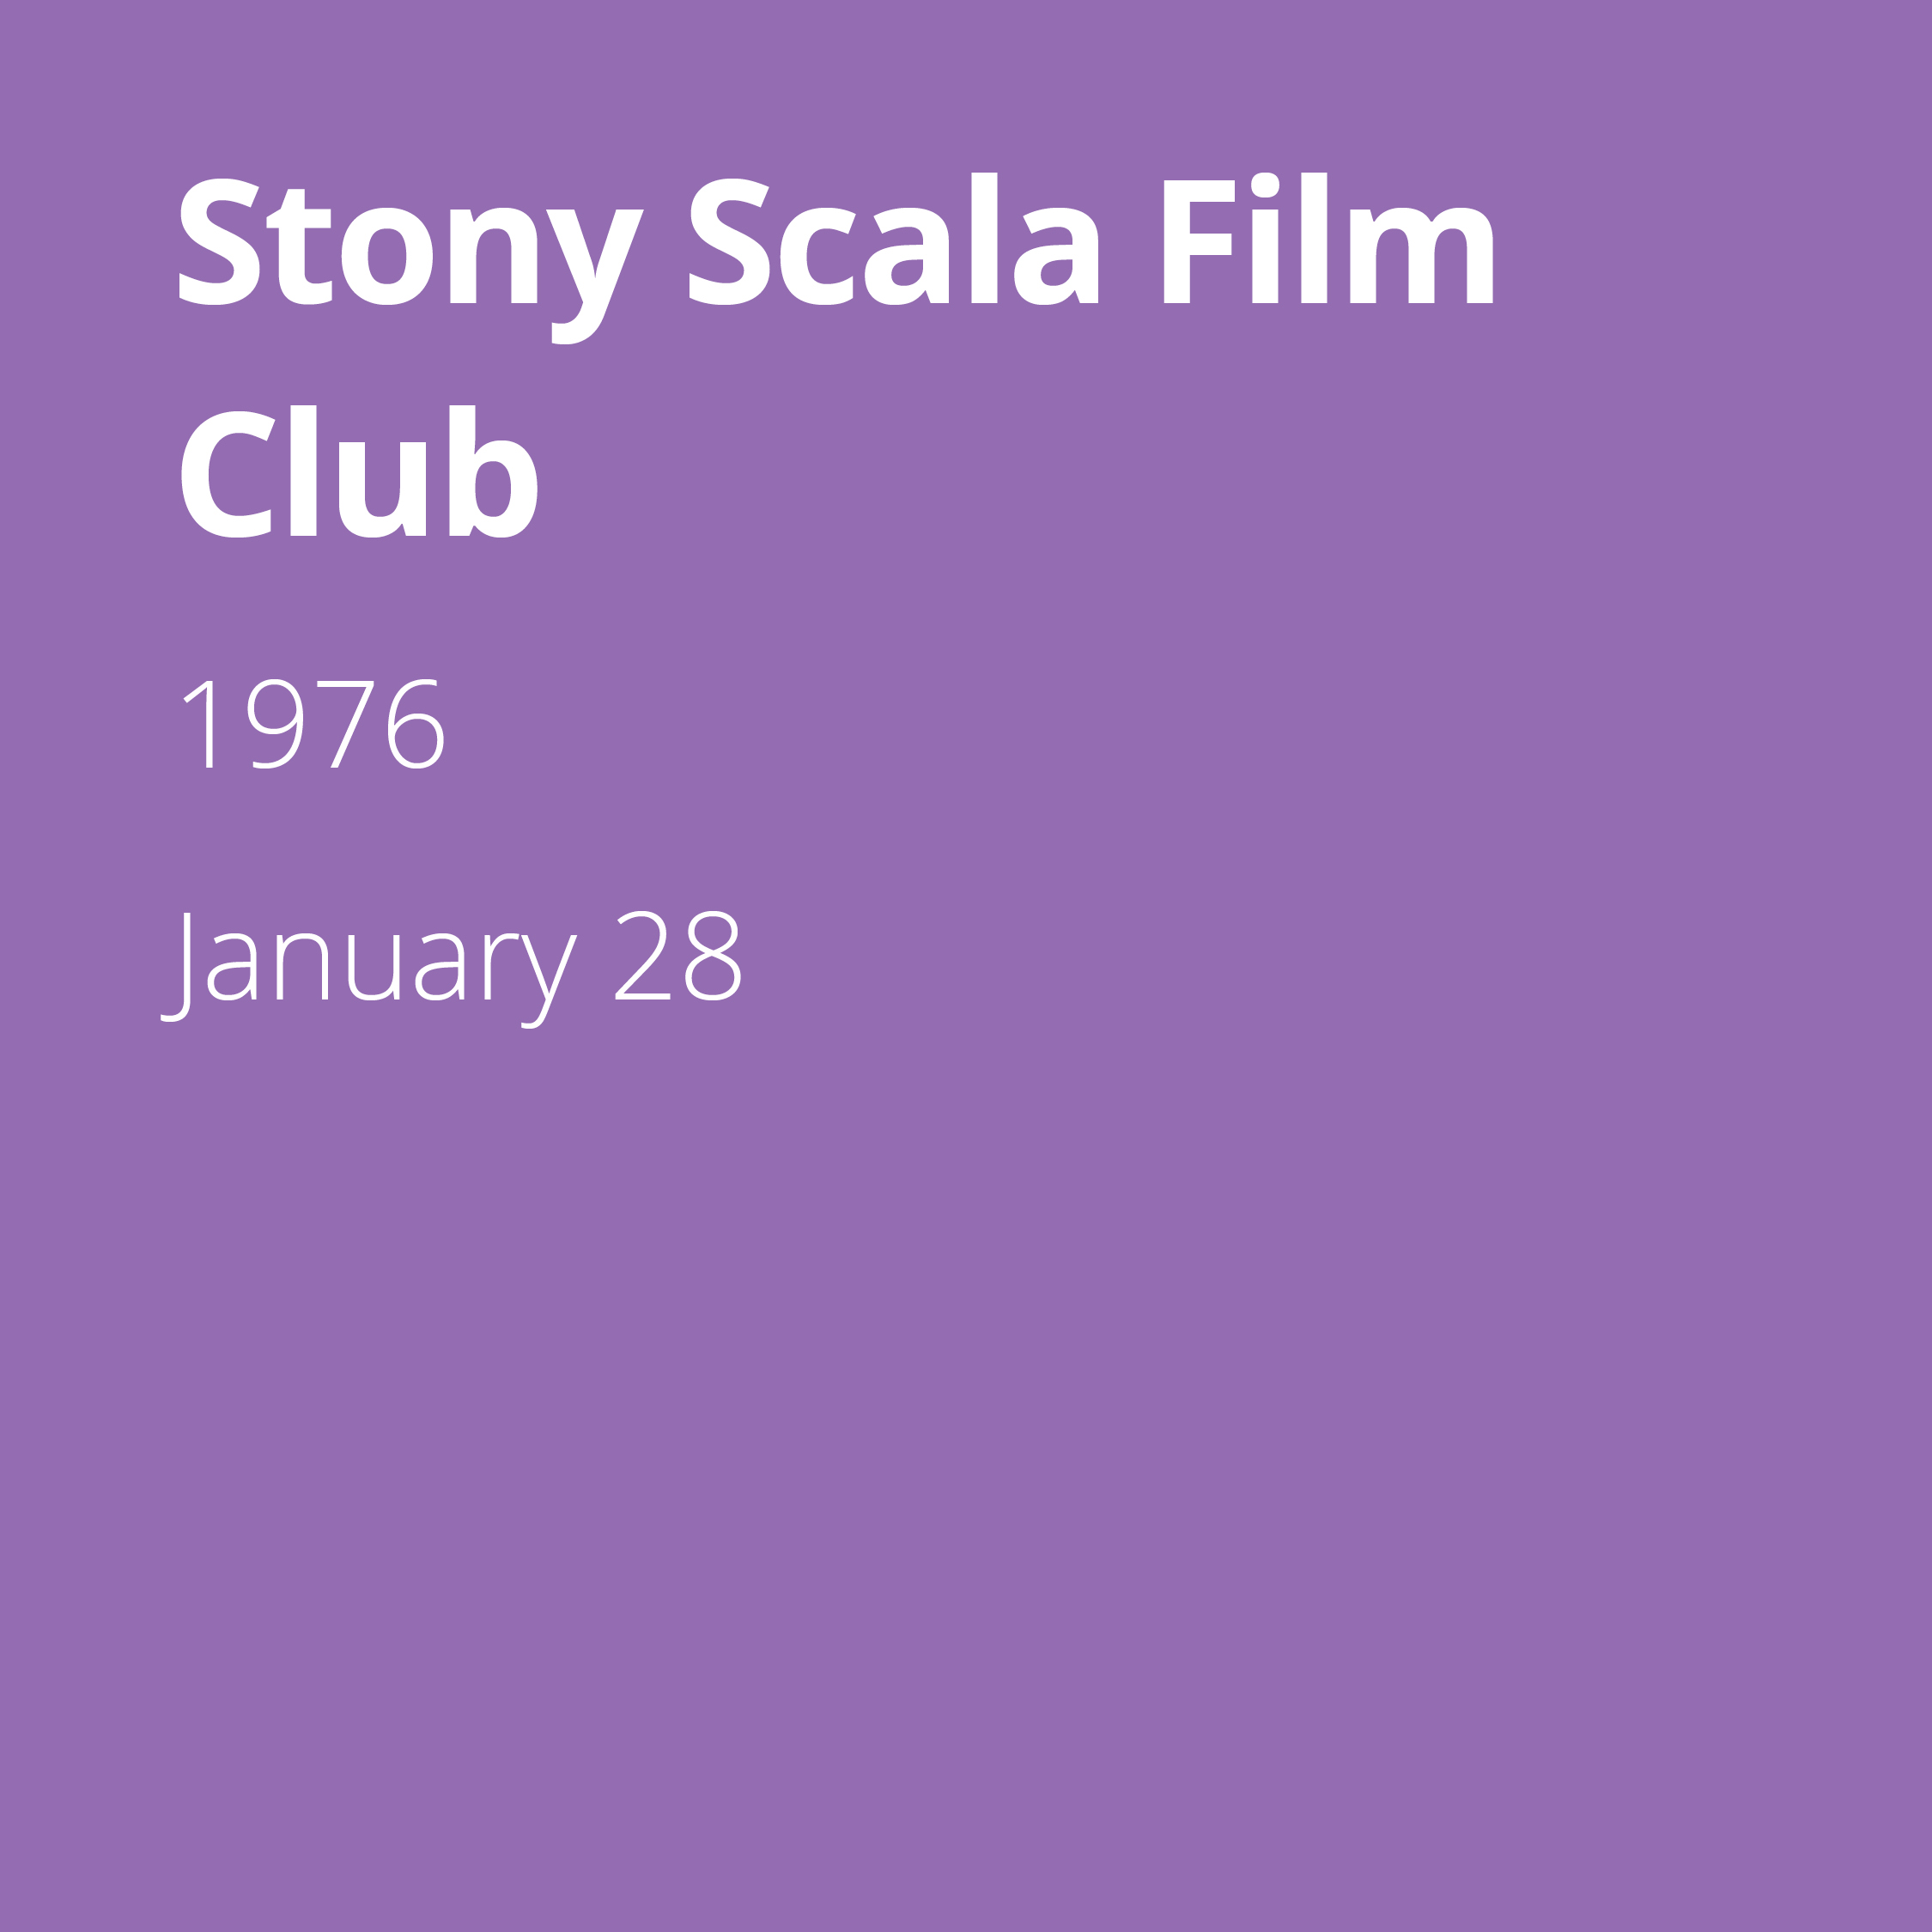 Stony Scala Film Club